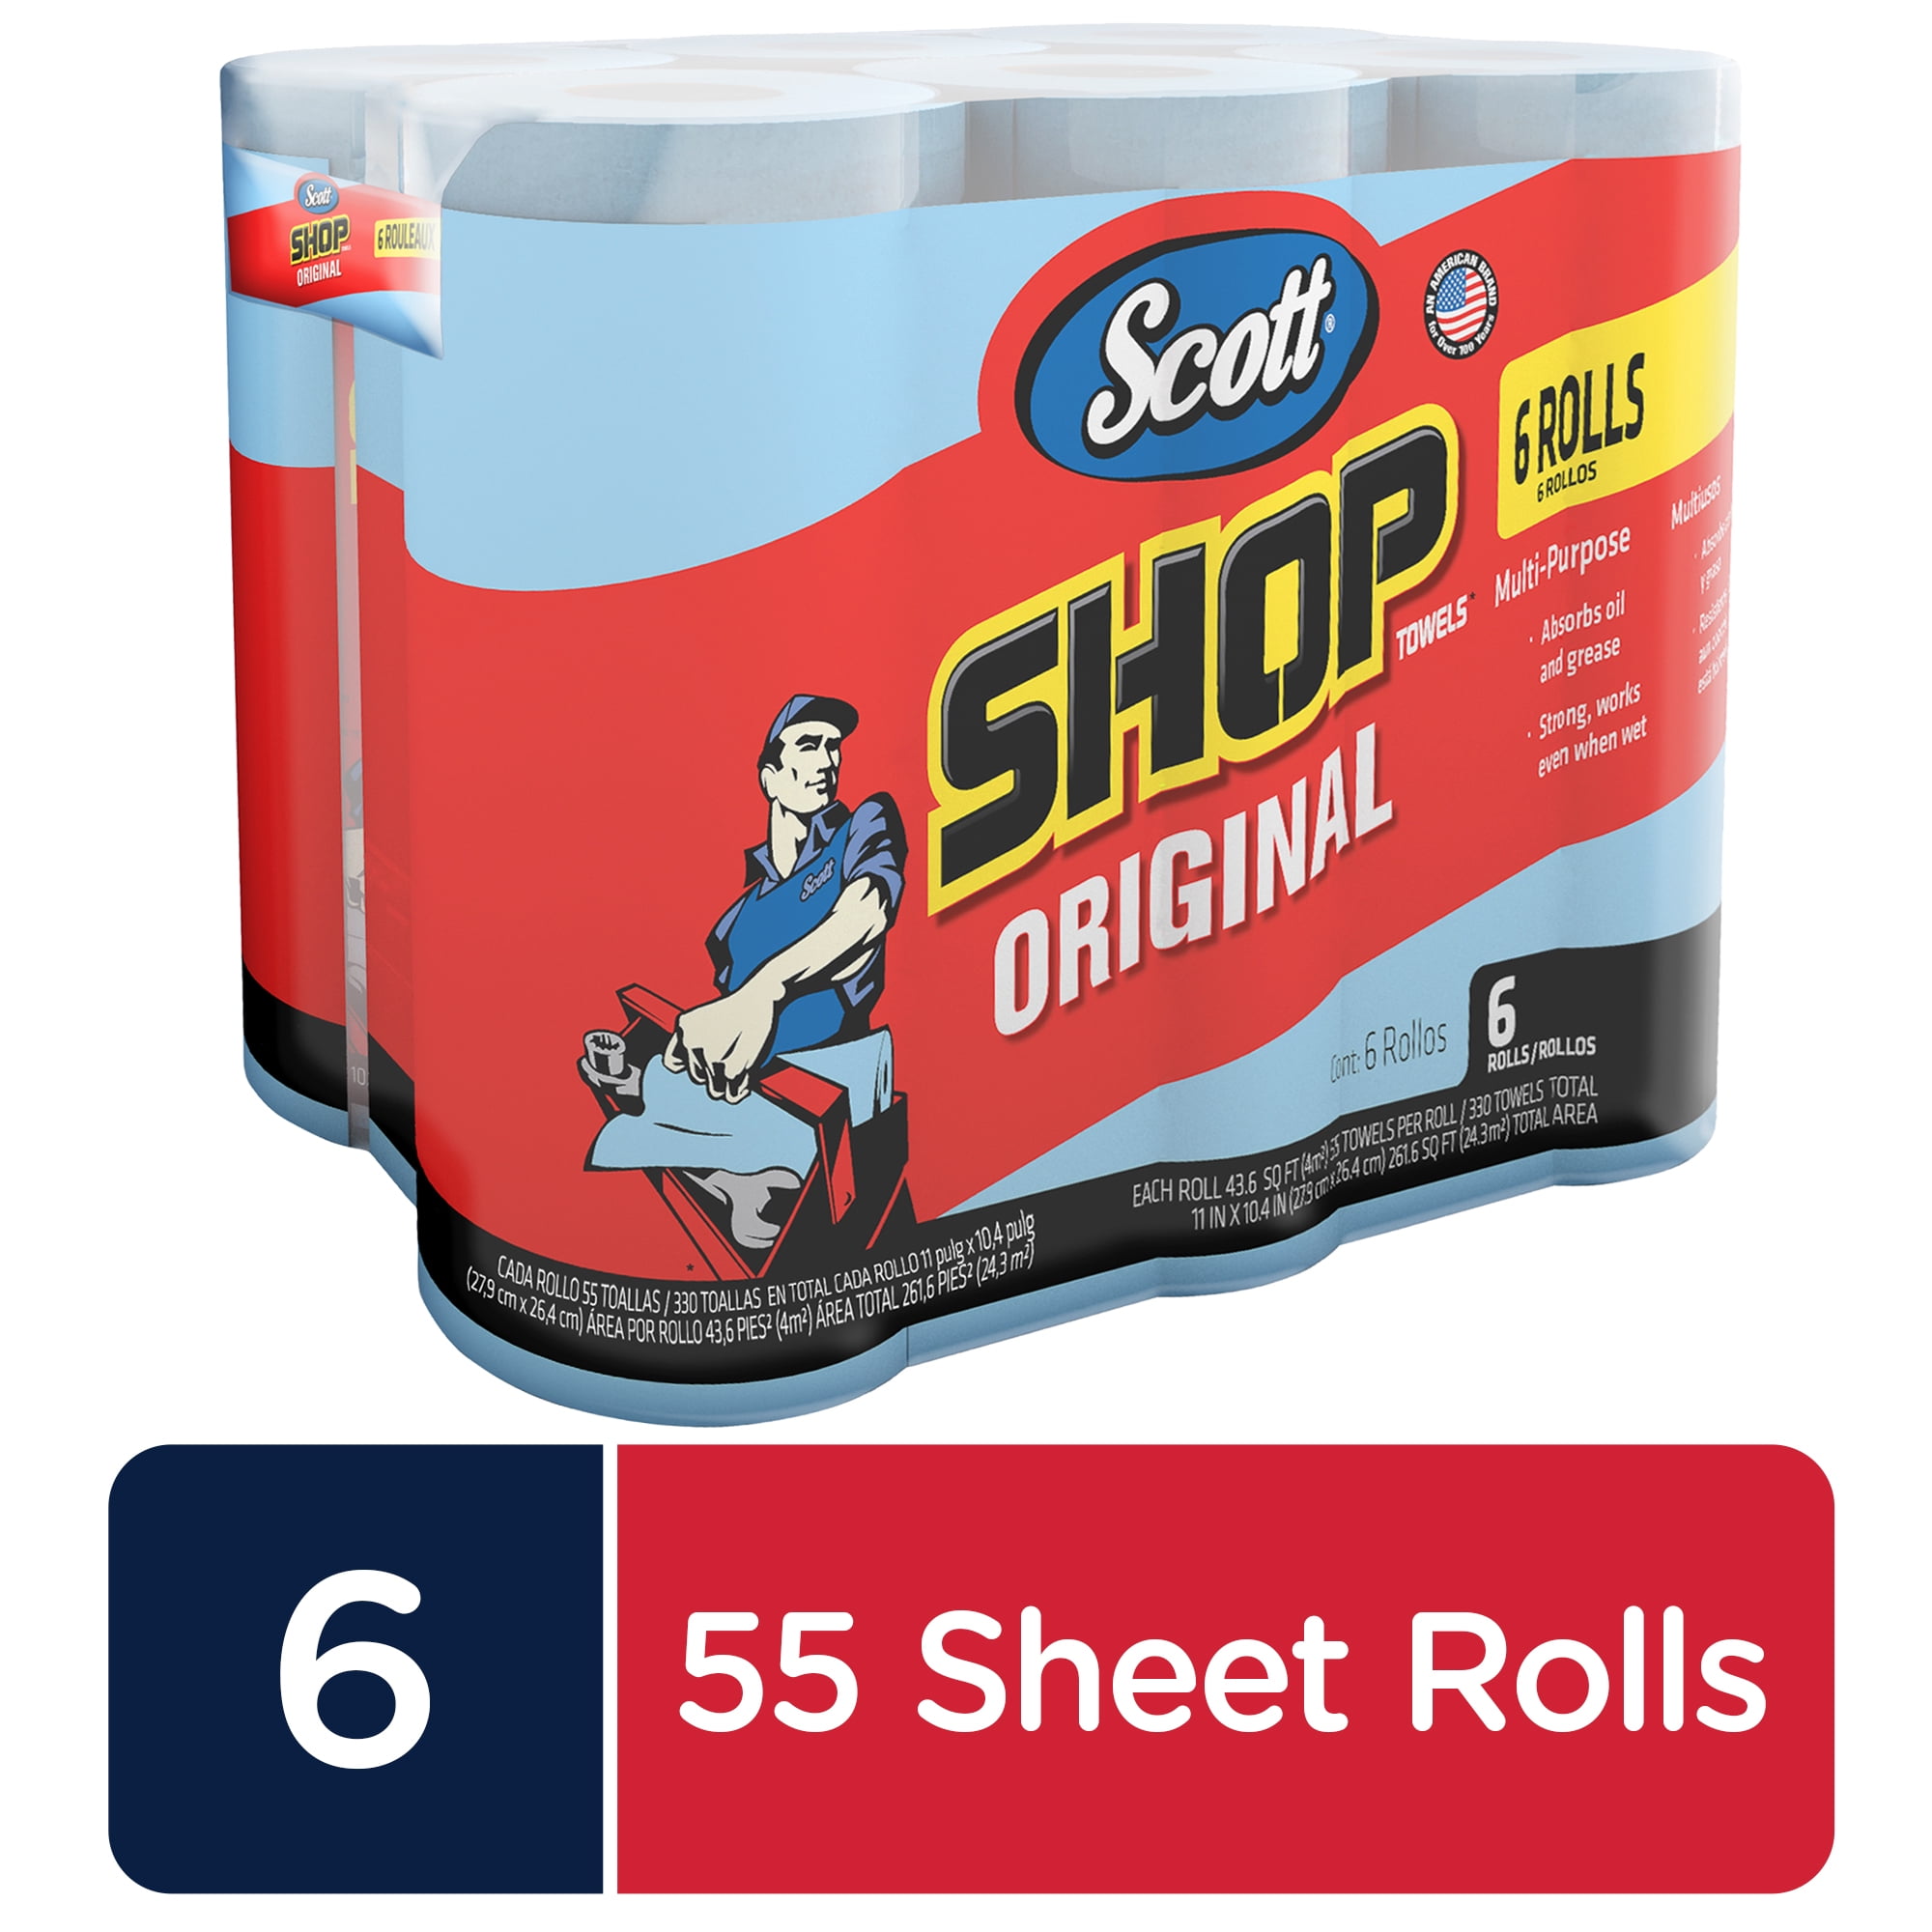 Quantity 6 12 Rolls Scott 75040 2 Pack Original Blue Shop Towels 